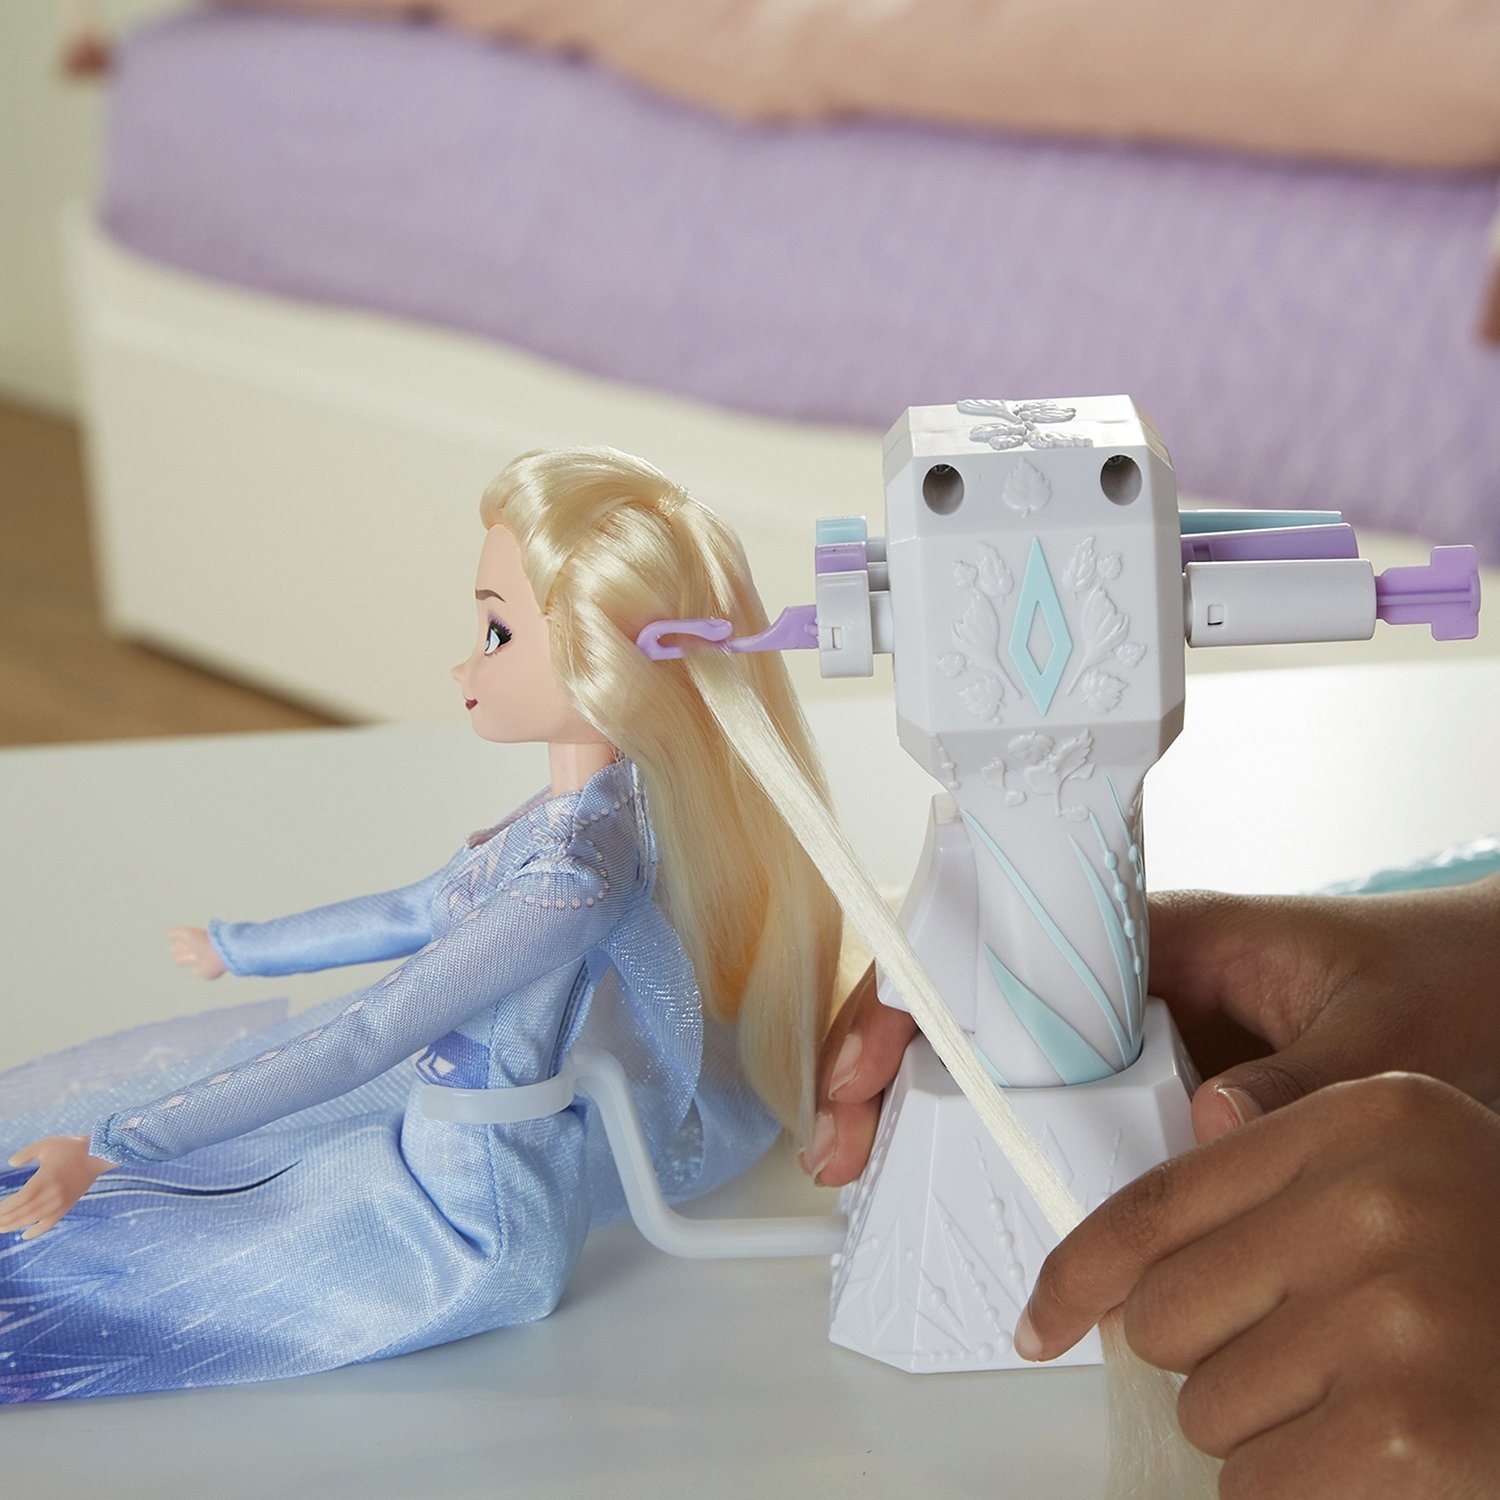 Кукла Эльза Disney Princess, Холодное сердце 2 Магия причесок  